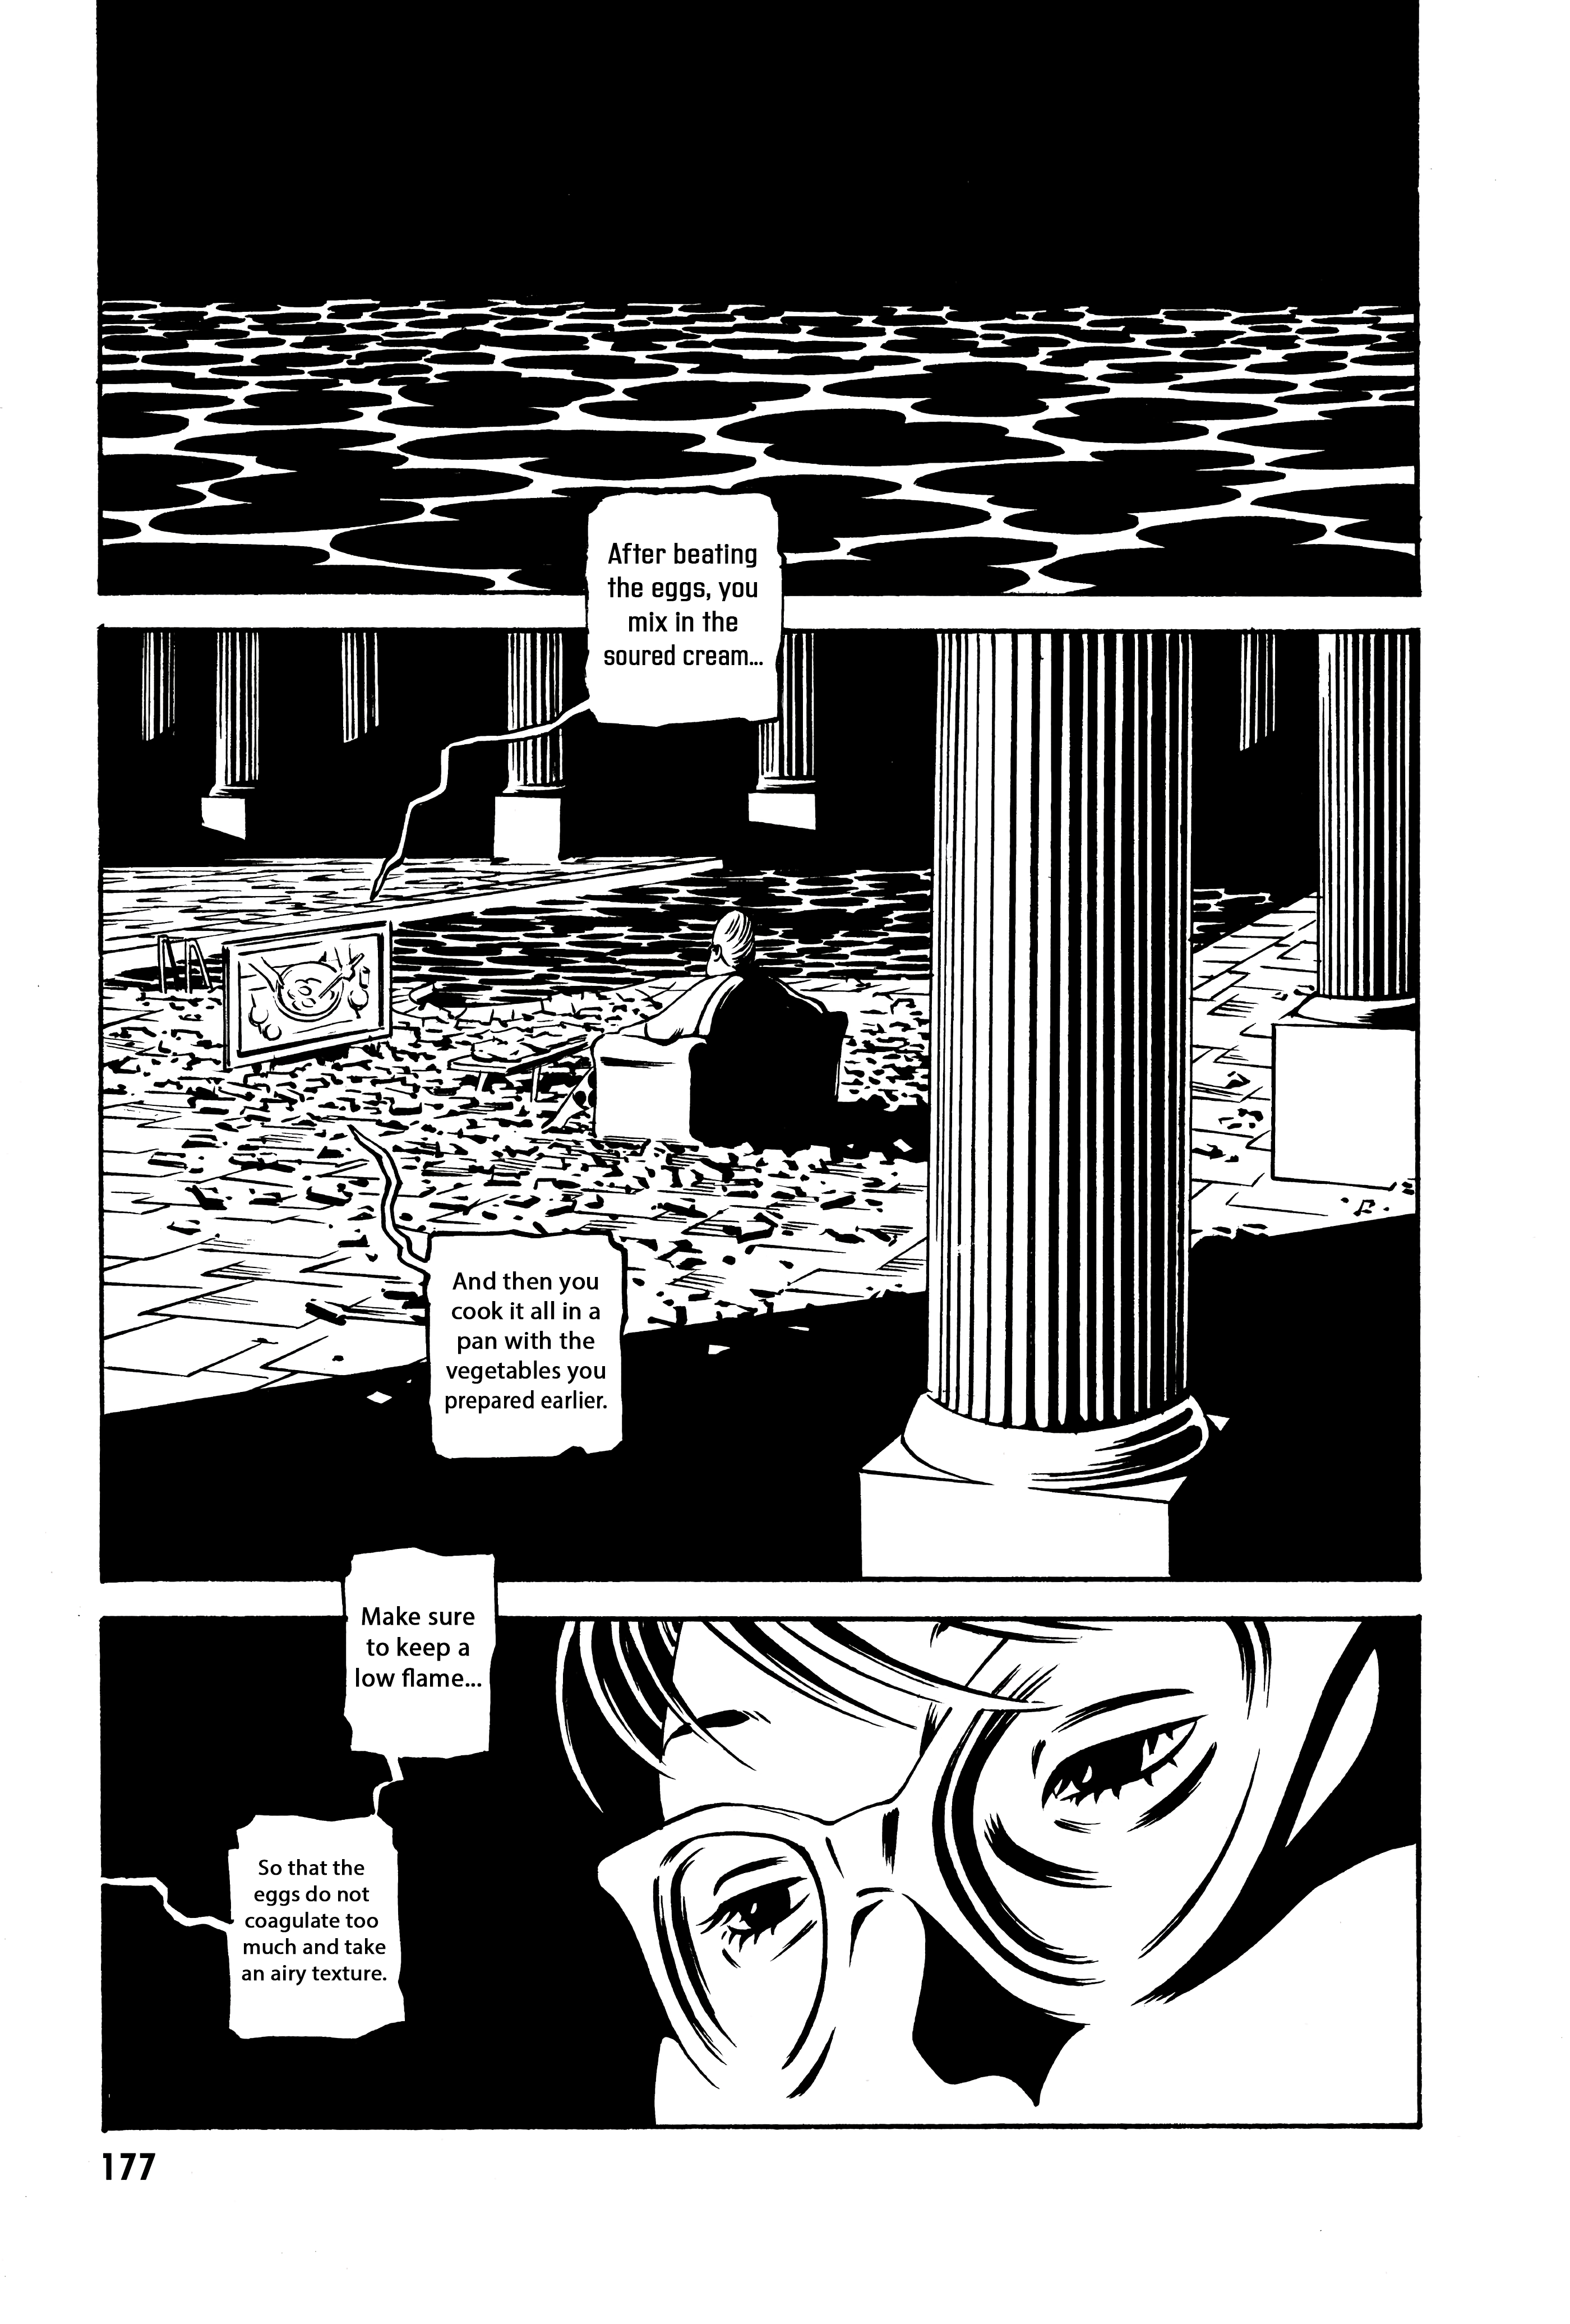 Deathco - Page 1